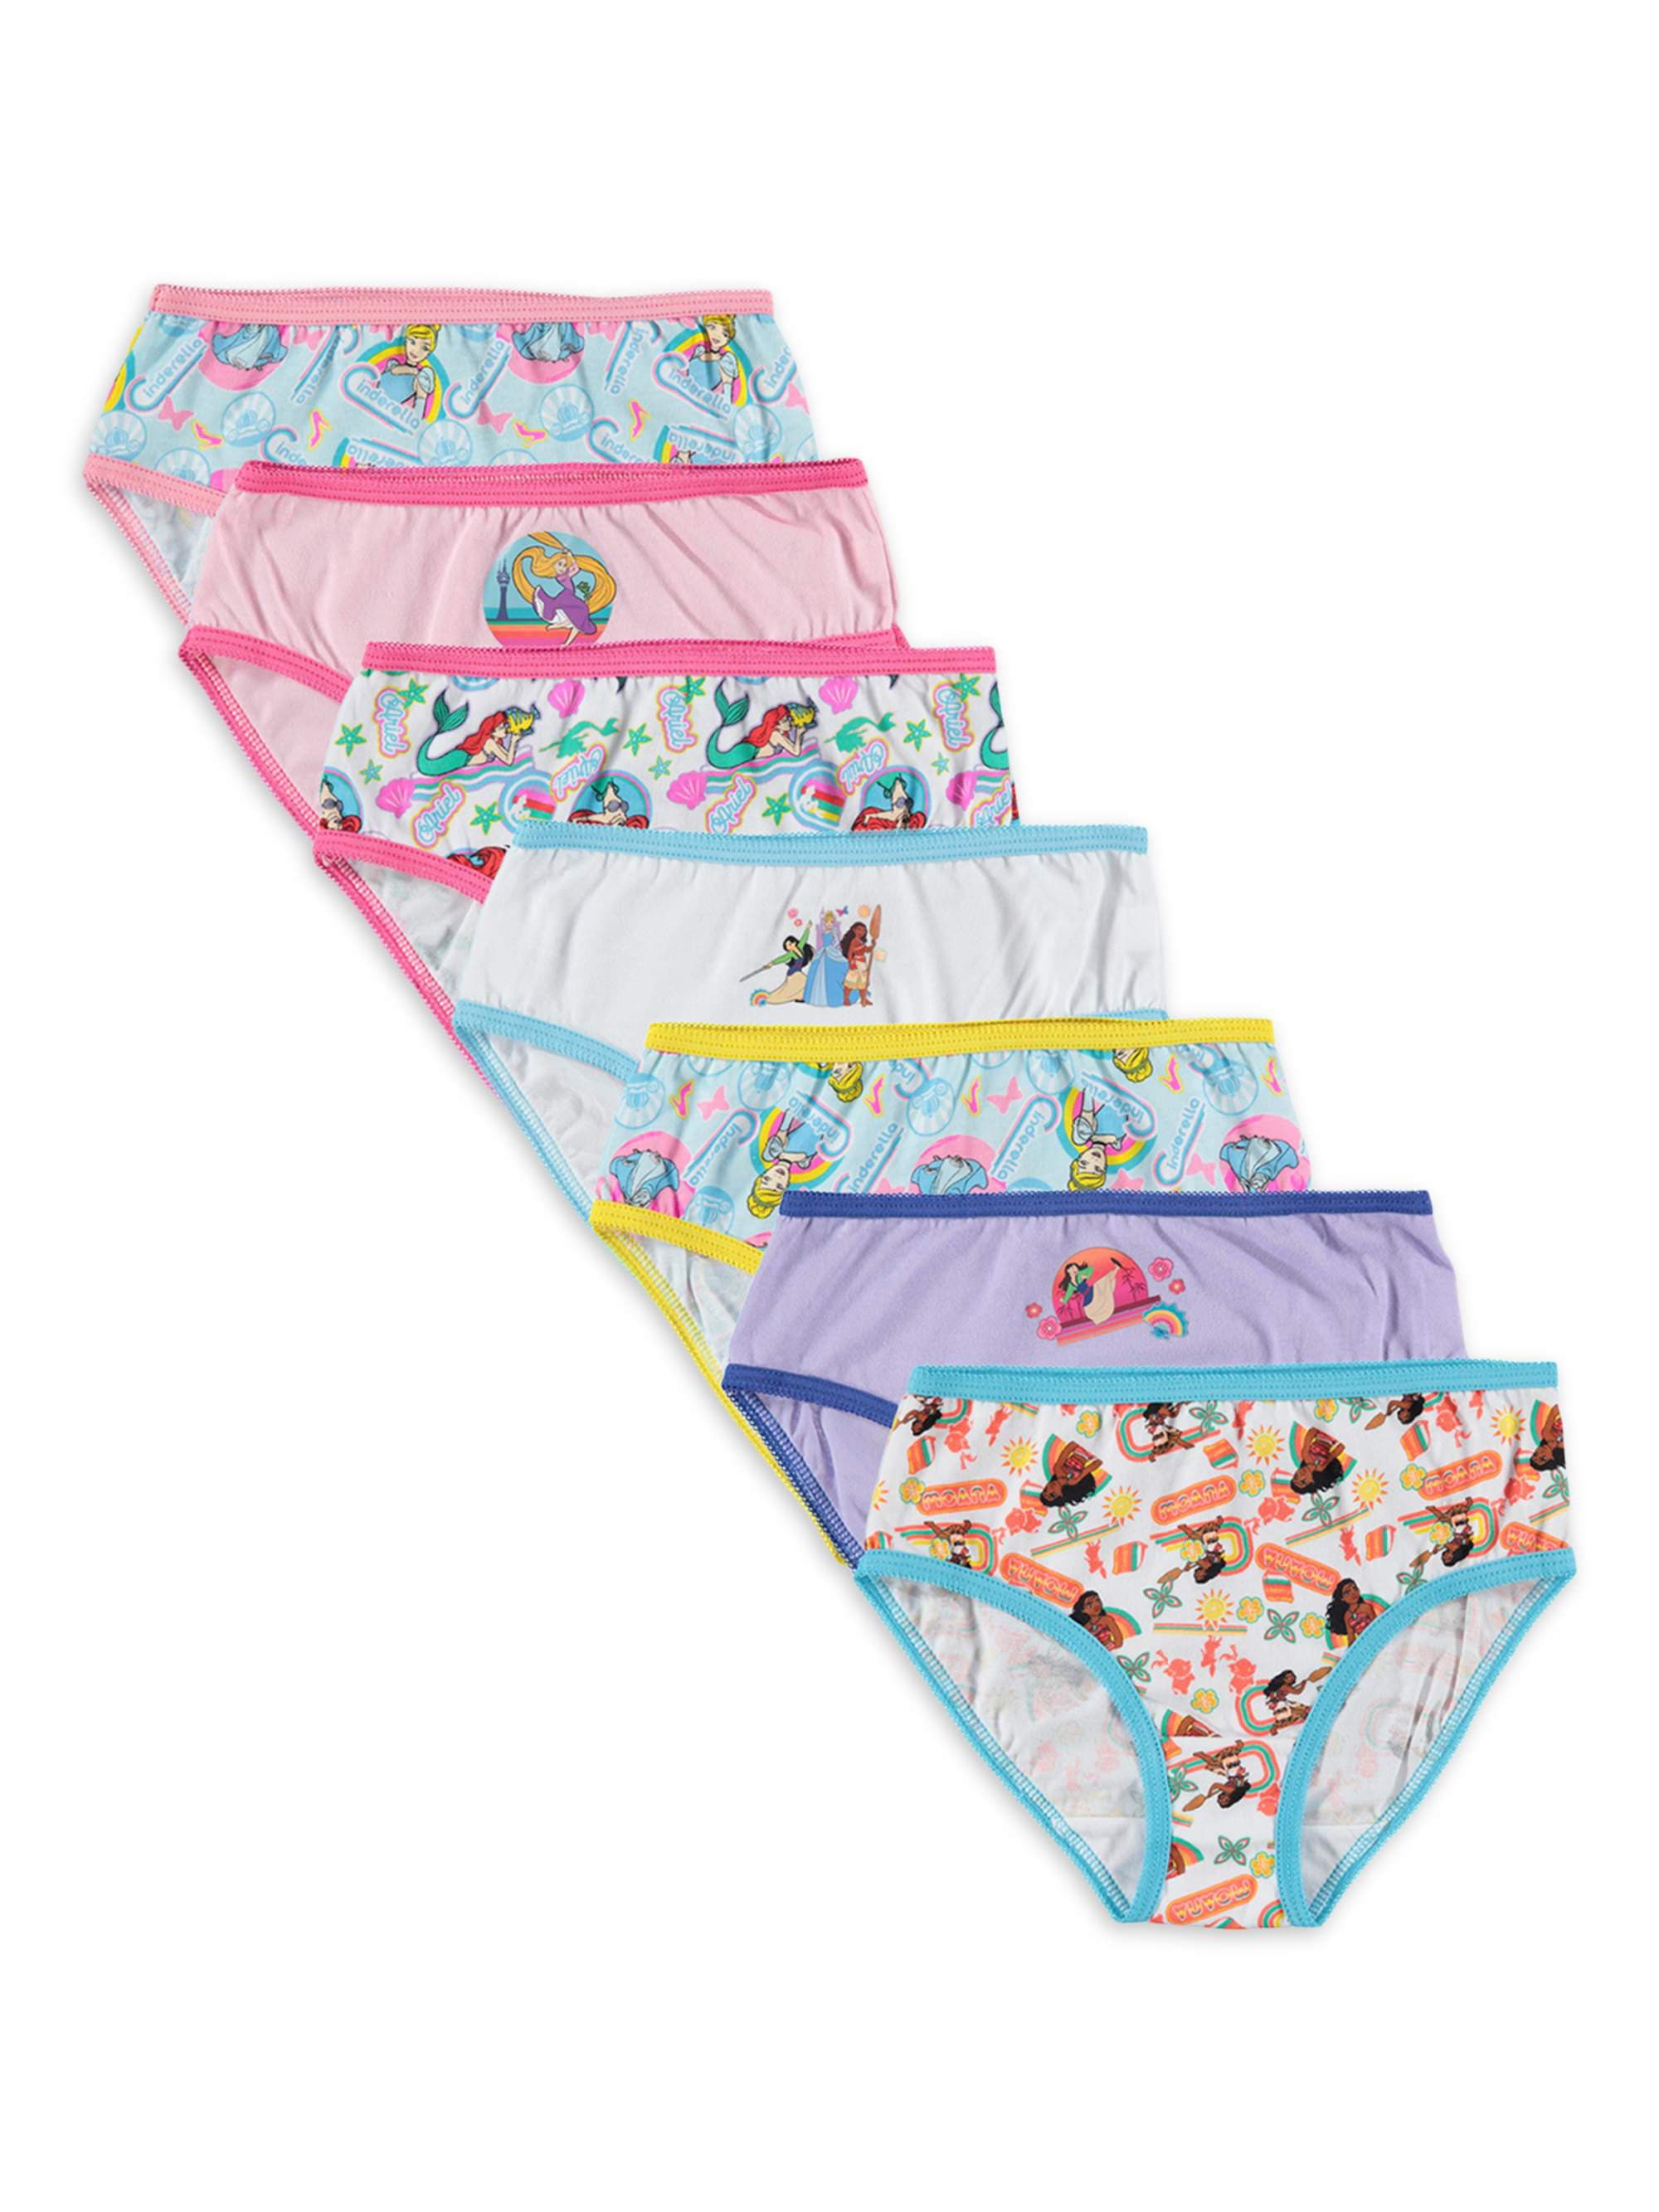 Disney Princess Girls Briefs Underwear 7-Pack, Sizes 4-8 - DroneUp